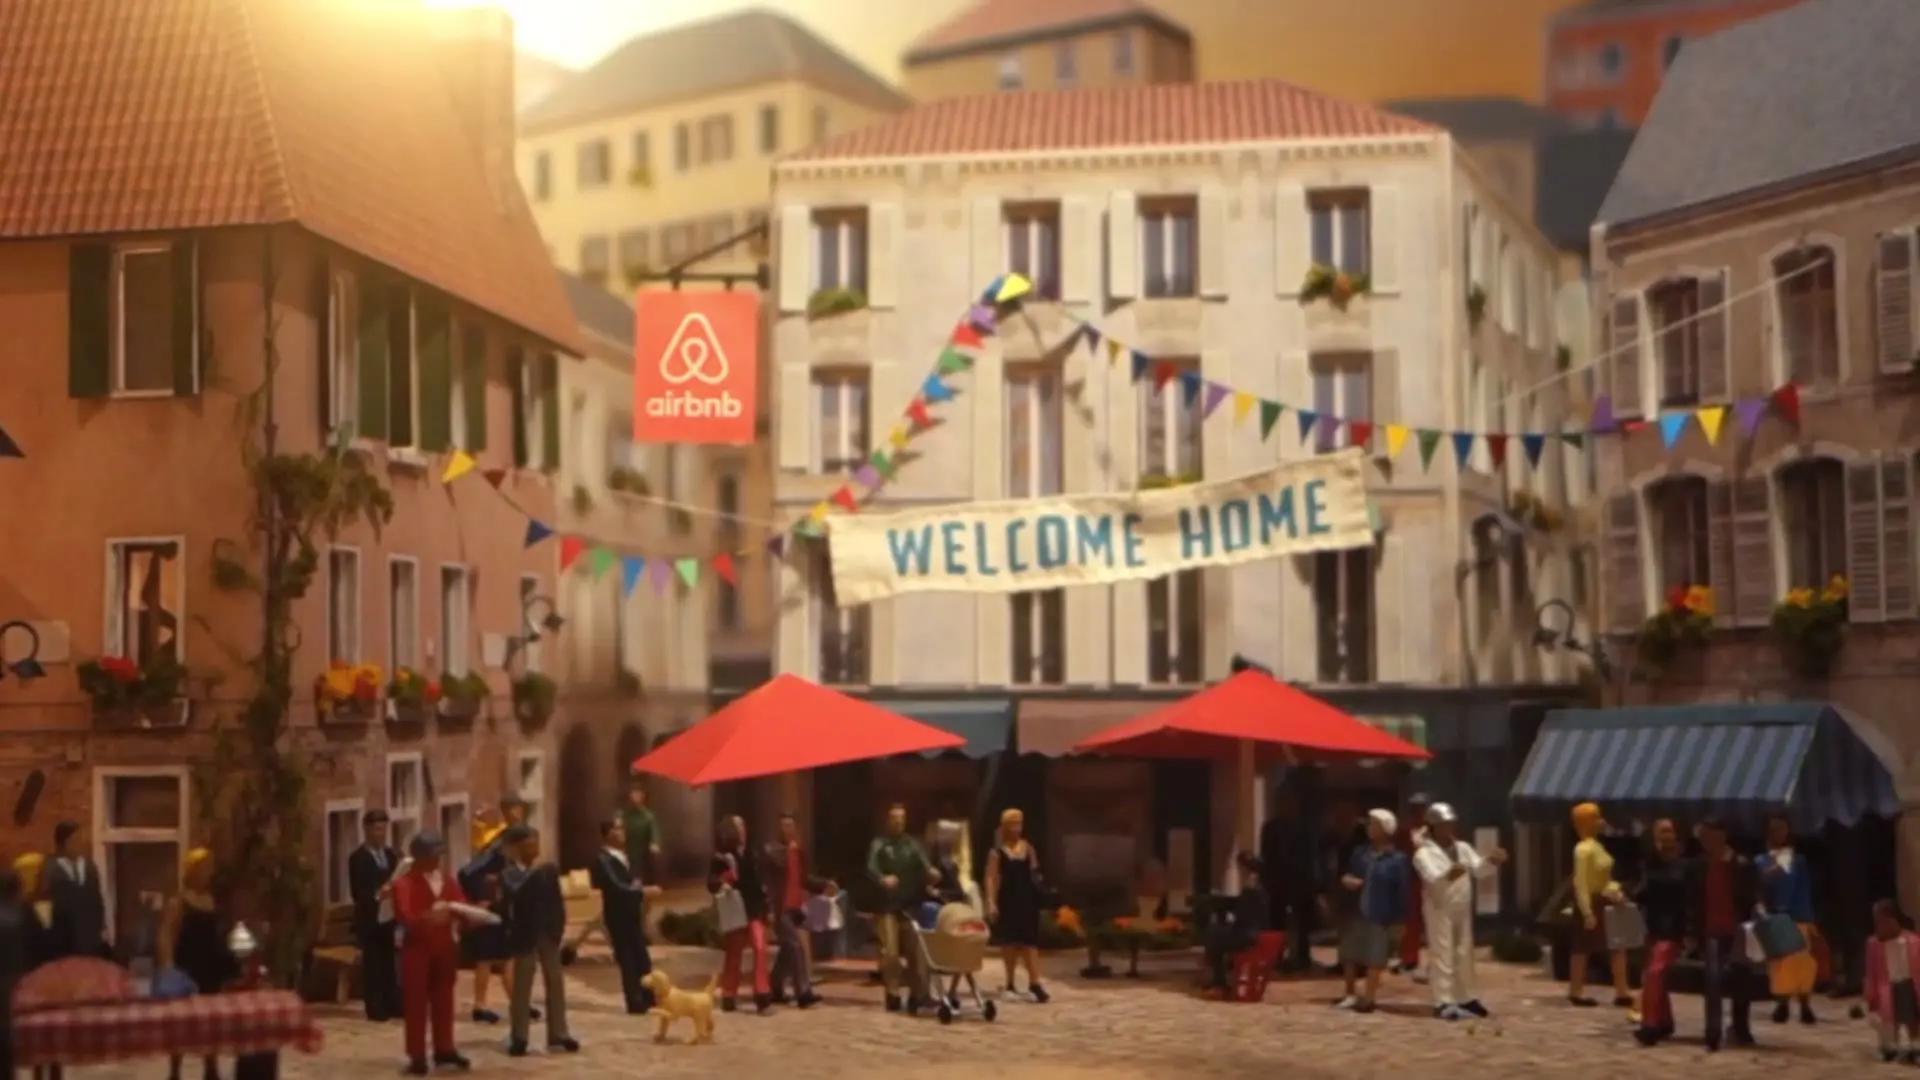 El increíble anuncio artesanal de Airbnb hecho a mano